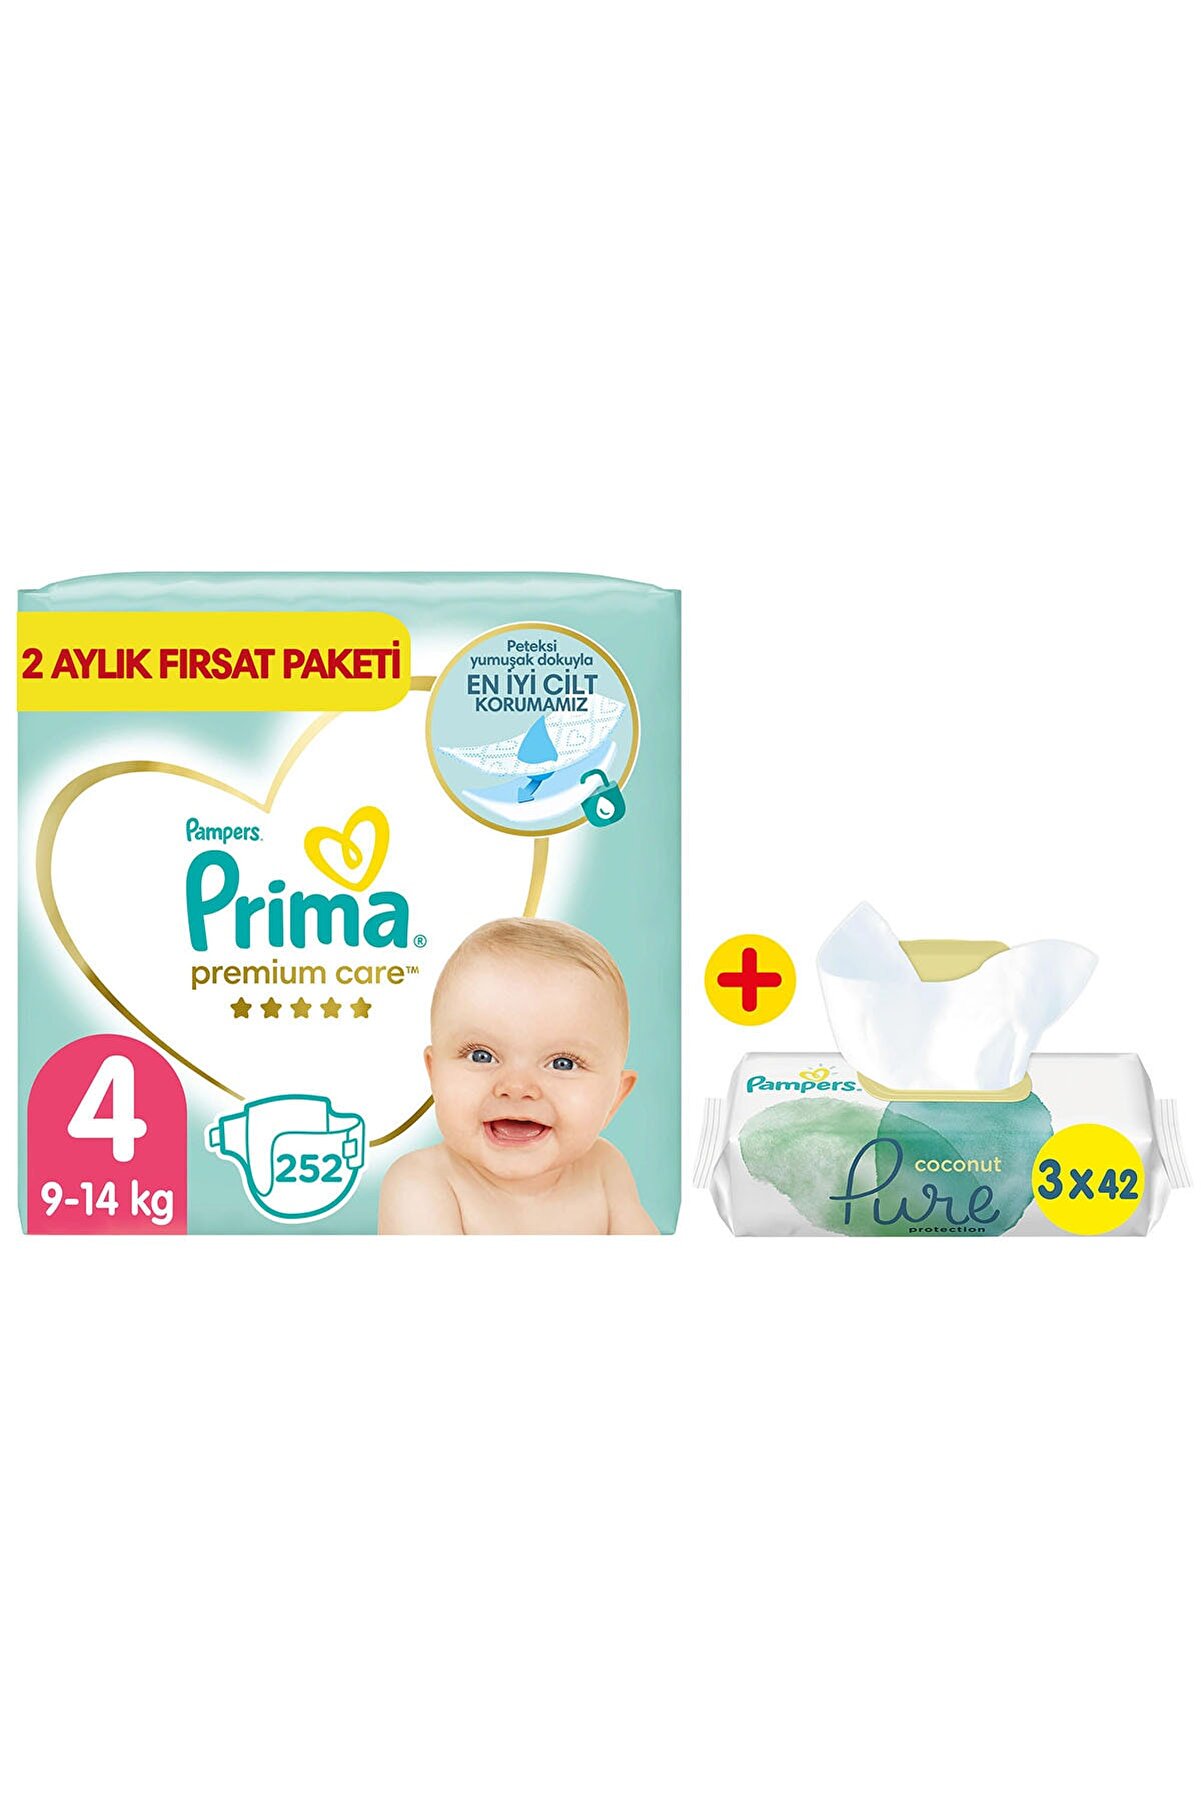 Prima Bebek Bezi Premium Care 4 Beden 252'li 2 Aylık Fırsat Paket + Pure 3'lü Islak Havlu 126 Yaprak